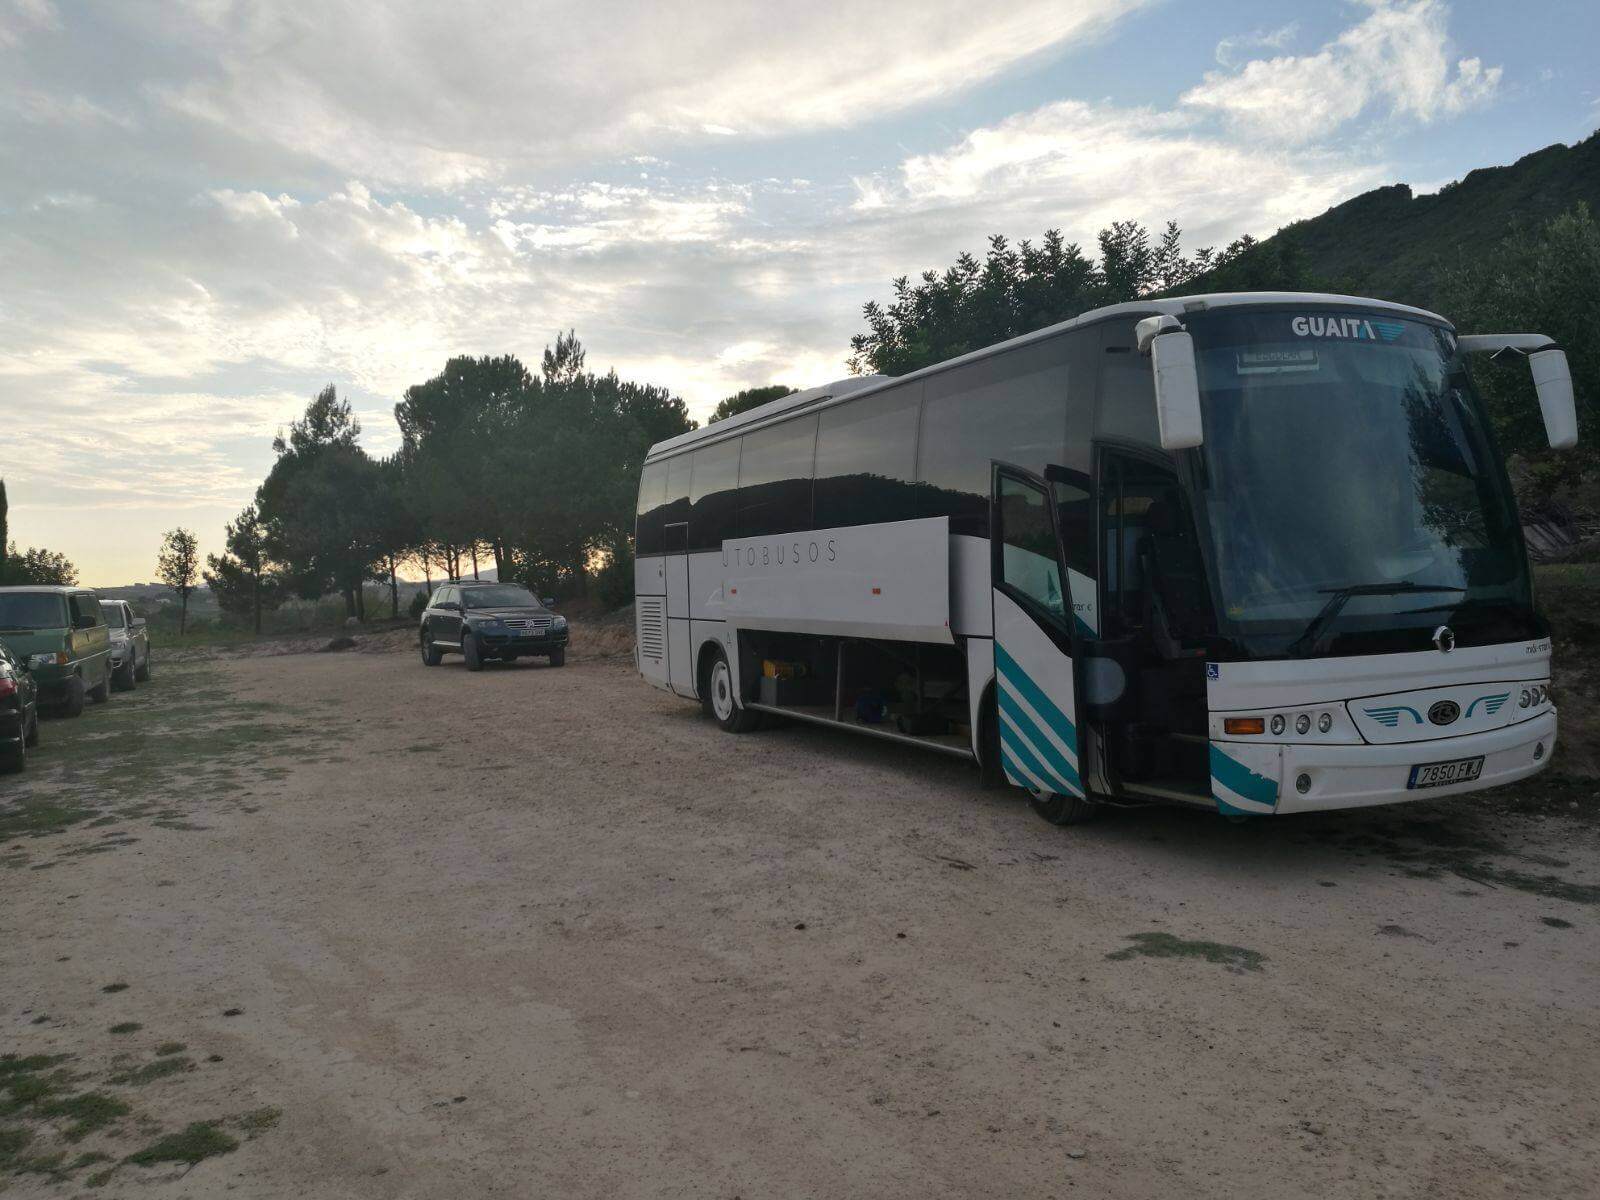 Alquile un Standard Coach de 40 plazas mercedes . 2017) de Autobuses Guaita de Turís 